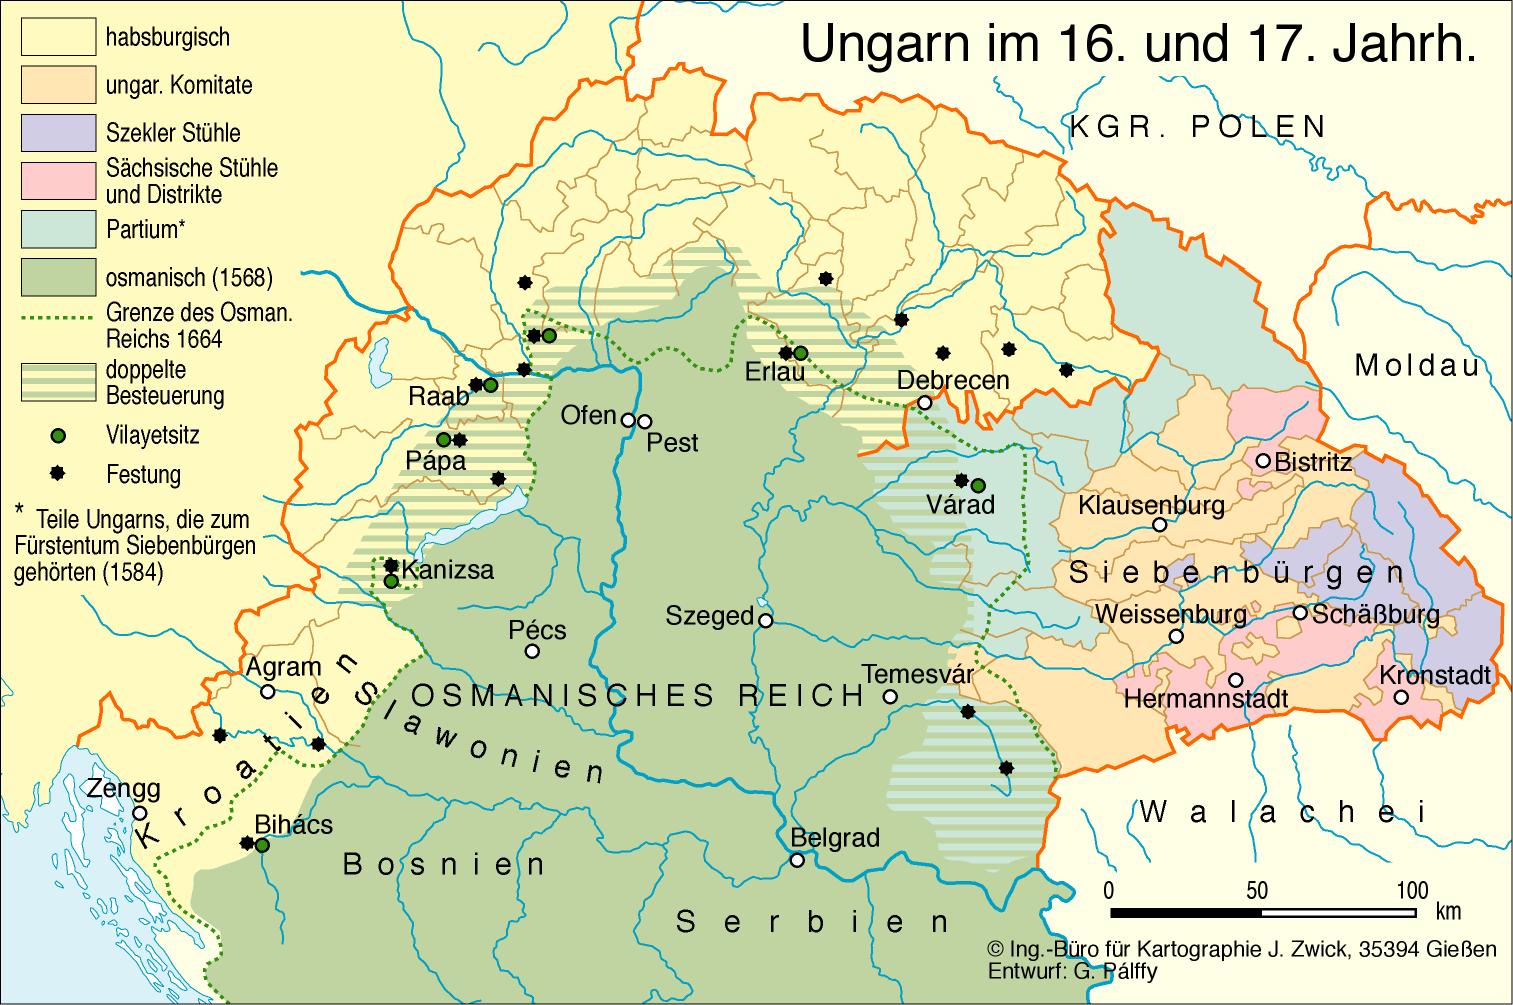 Ungarn im 16. und 17. Jahrhundert